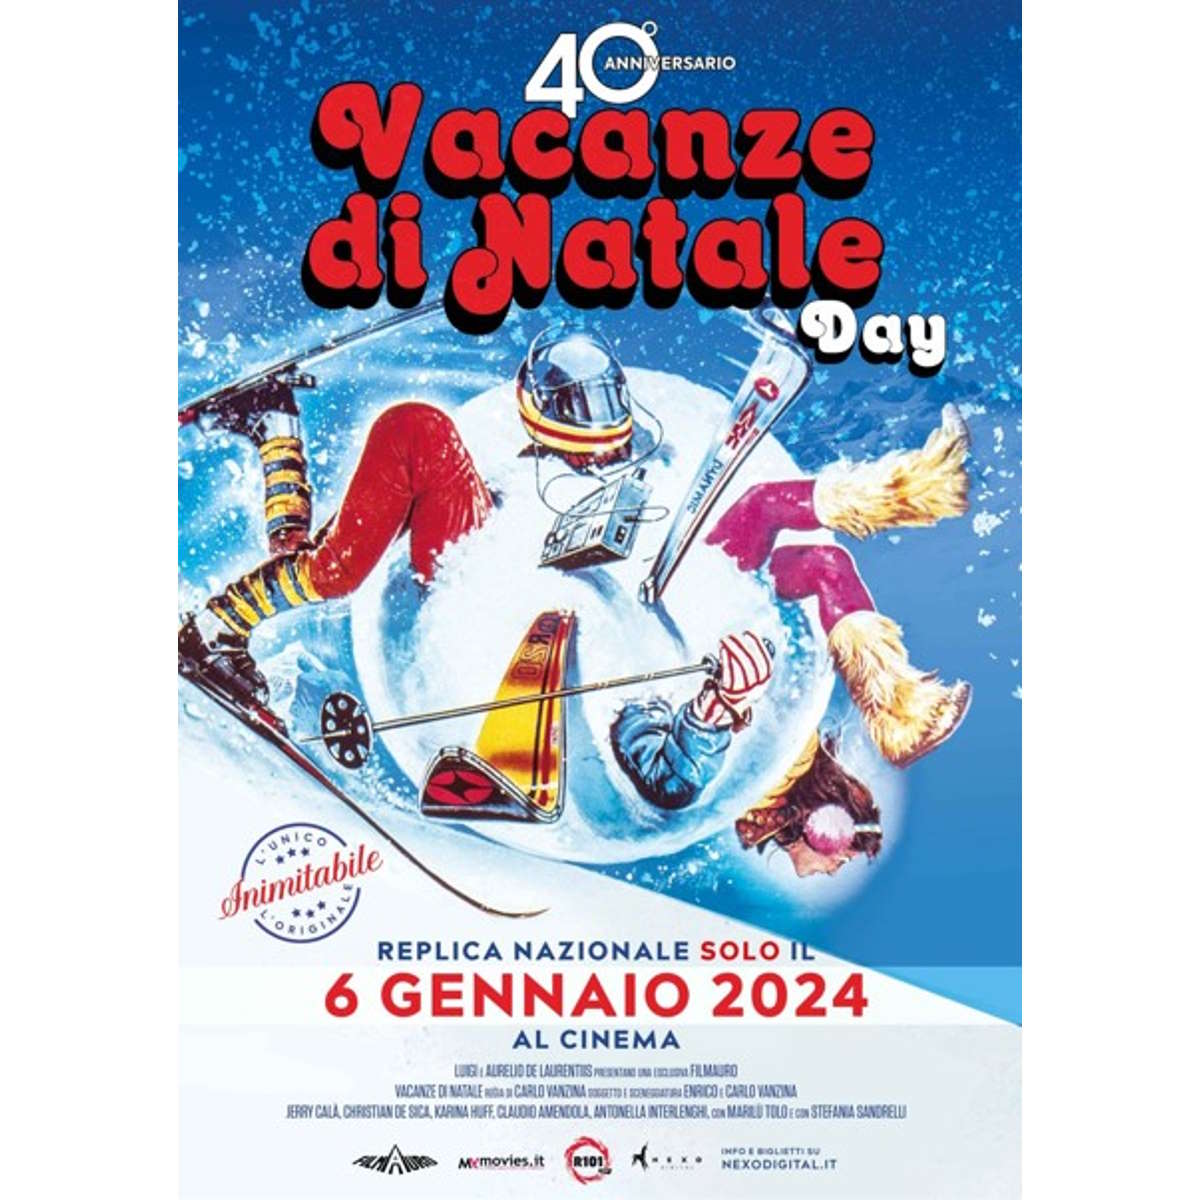 Dopo 40 anni, Vacanze Di Natale, di Carlo Vanzina, batte tutti al botteghino, con la media copia più alta d’Italia. A grande richiesta, il film ritorna, nelle sale, sabato 6 gennaio